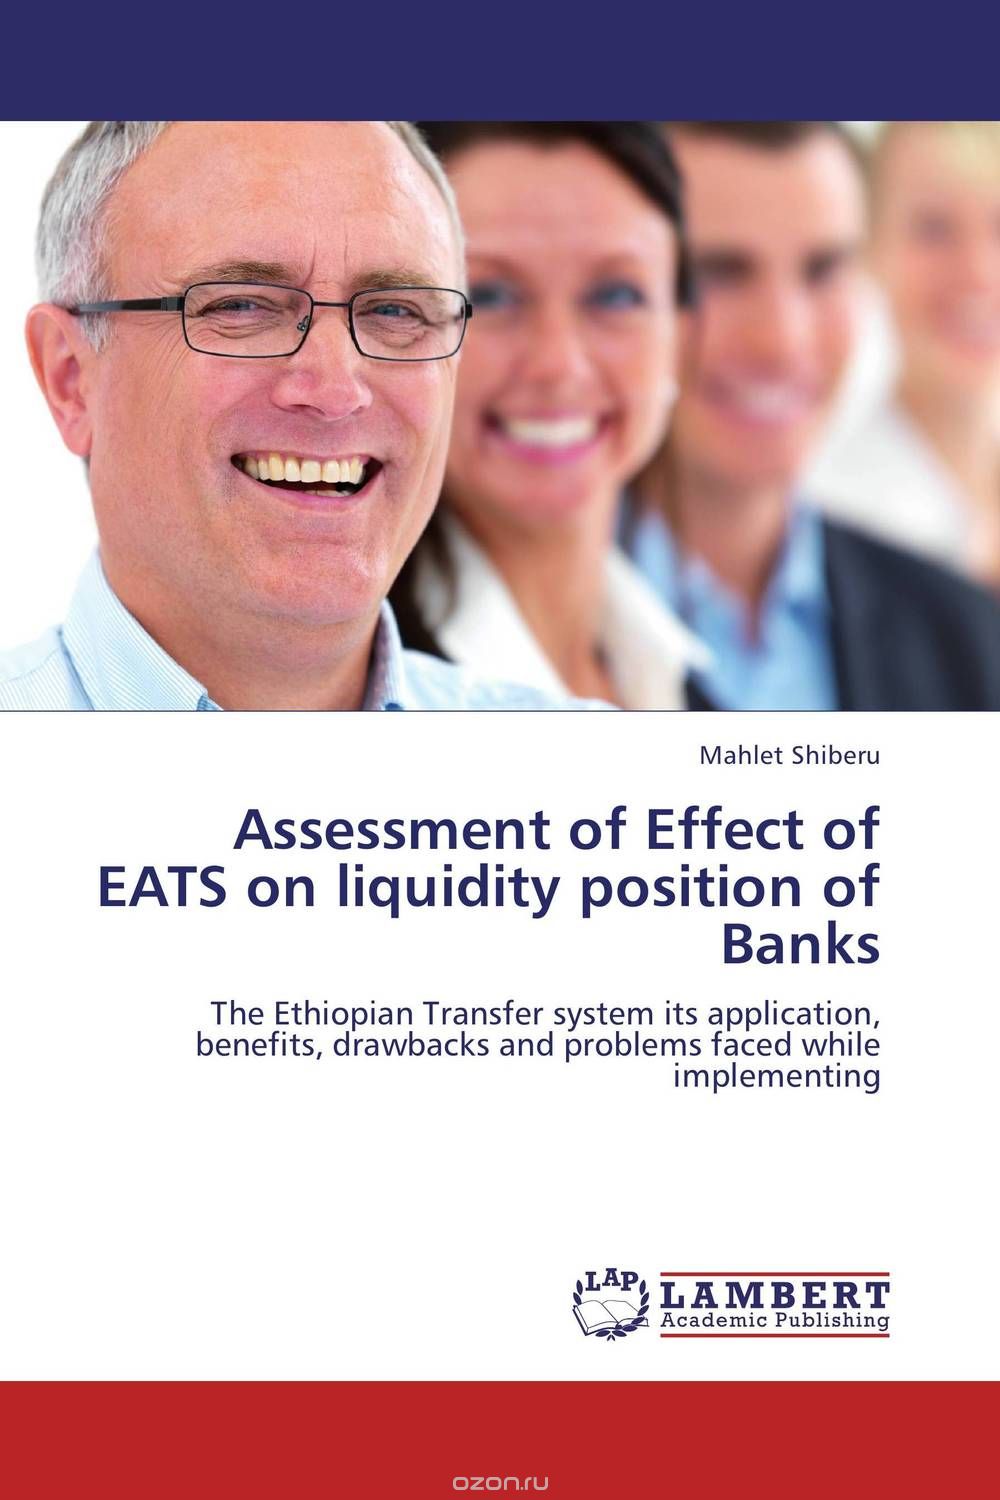 Скачать книгу "Assessment of Effect of EATS on liquidity position of Banks"